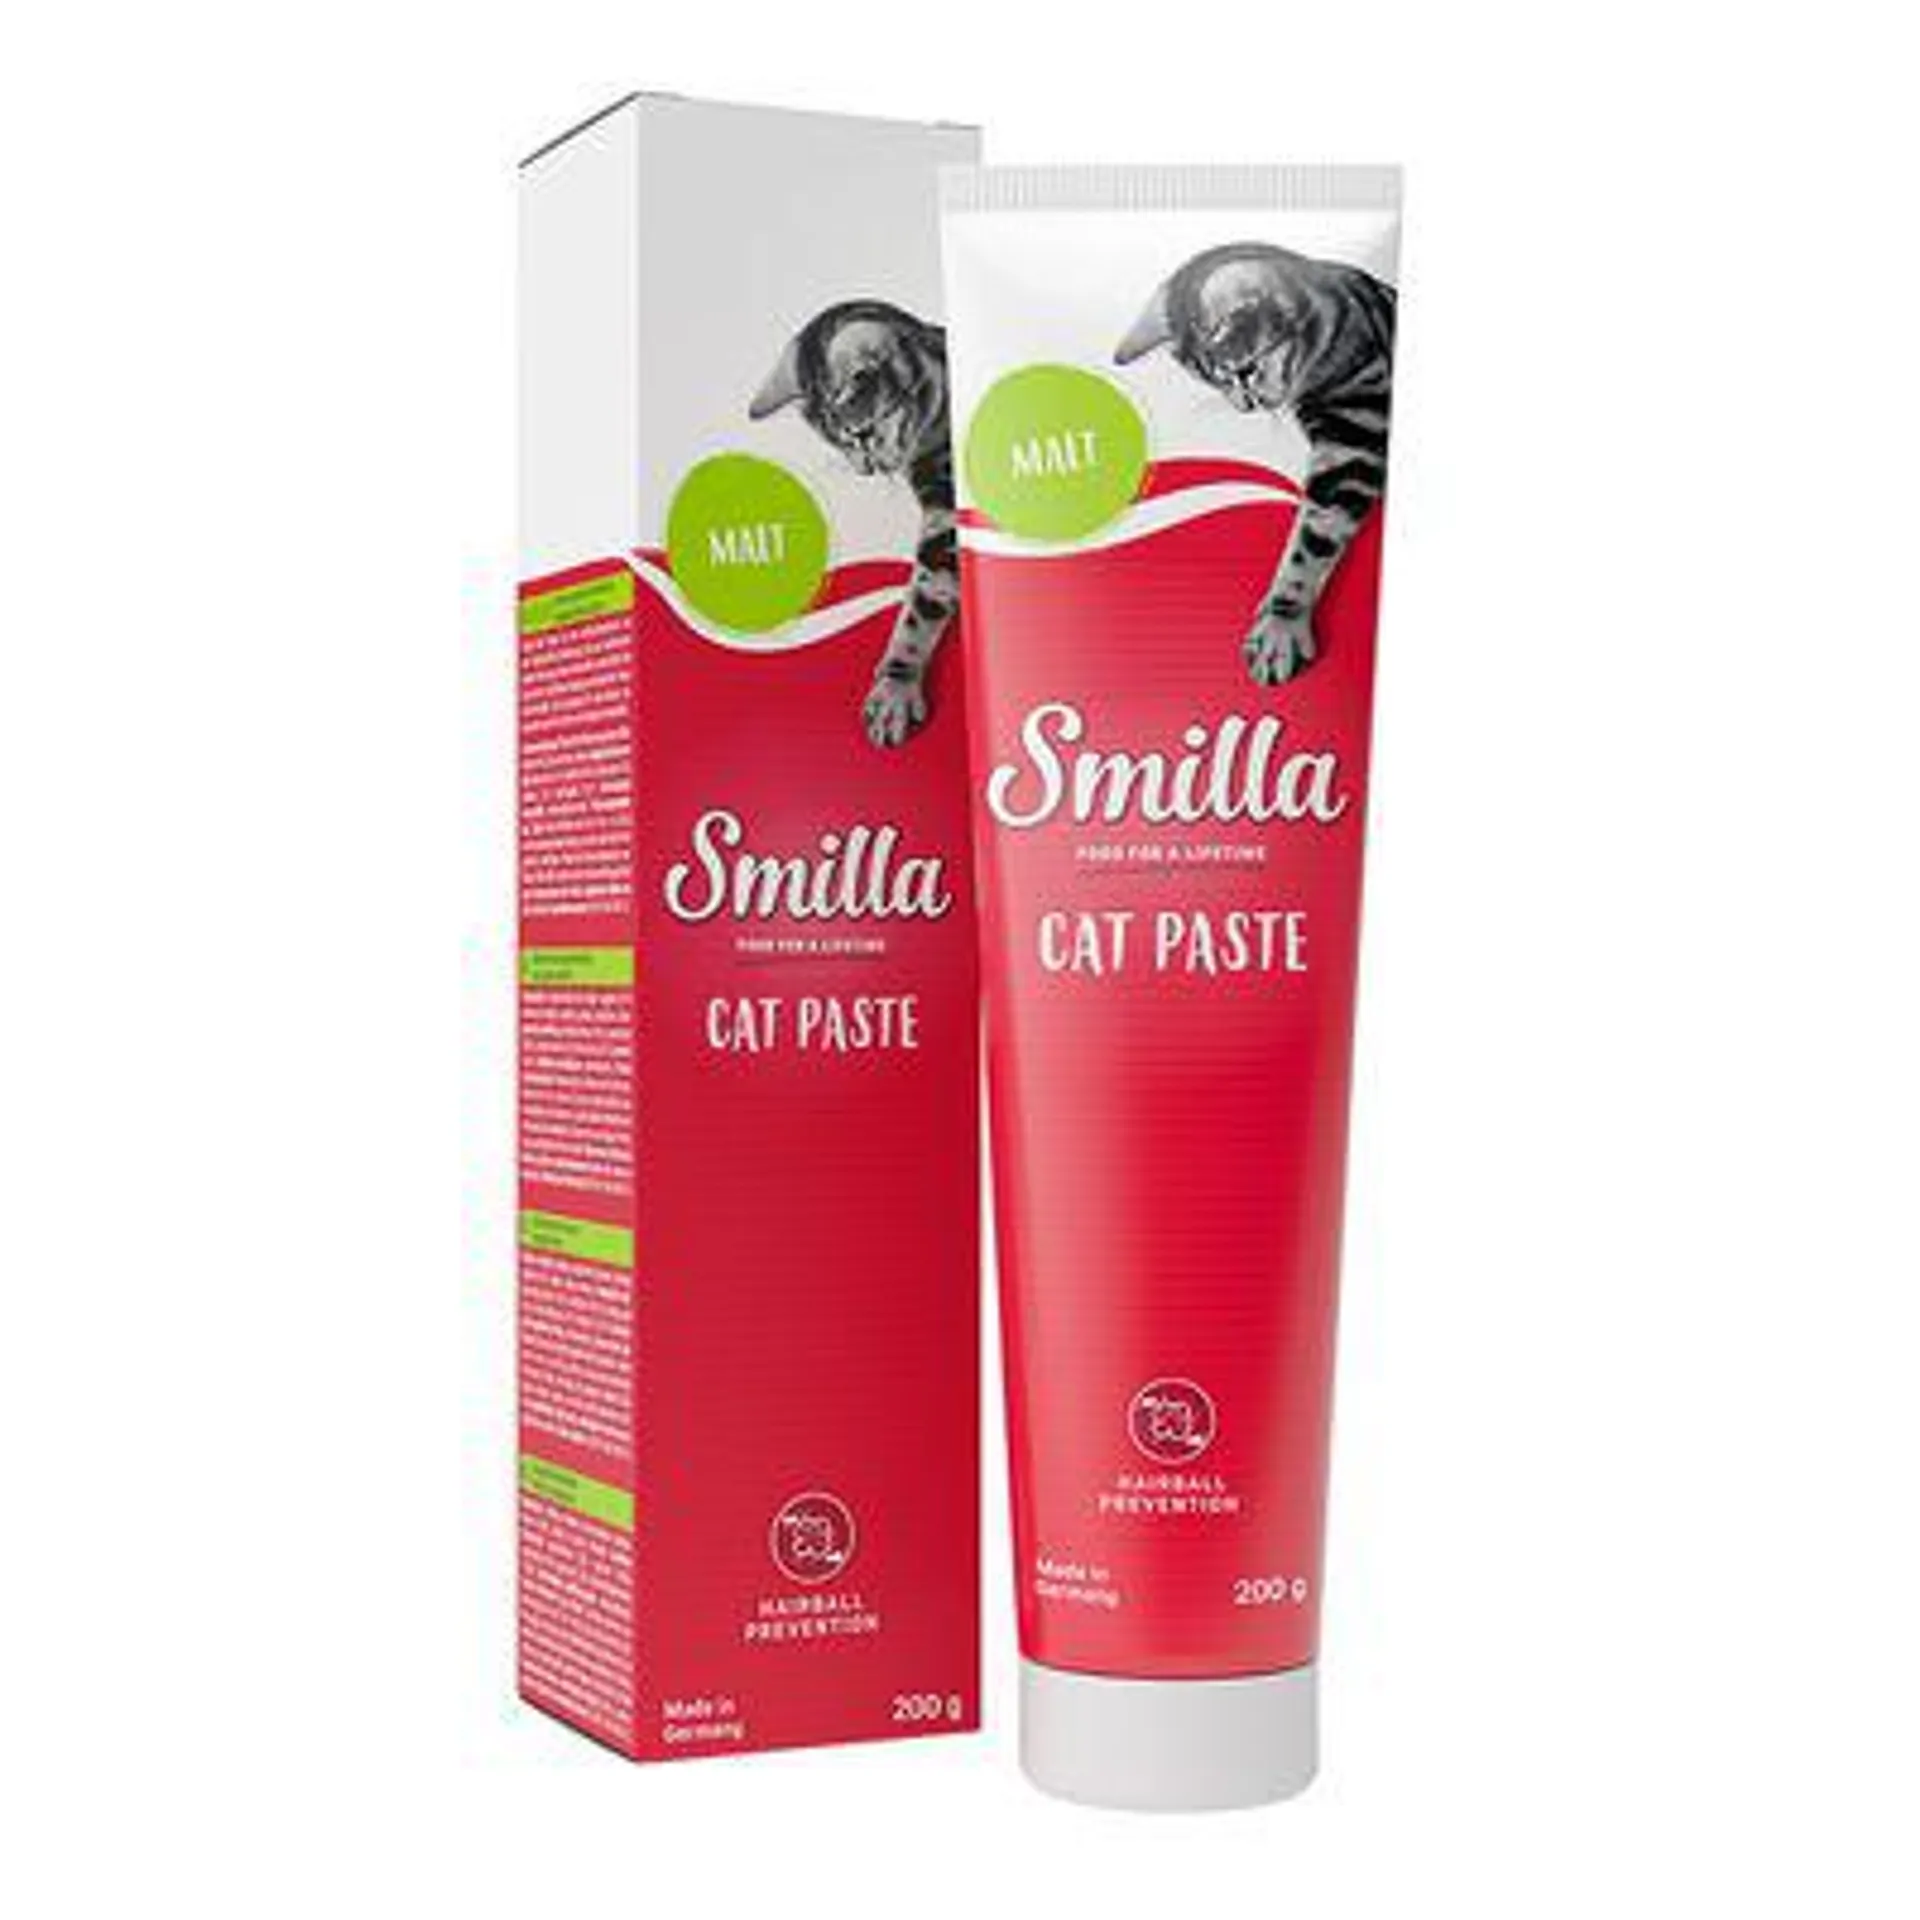 Smilla Cat Pastes - Special Price!*